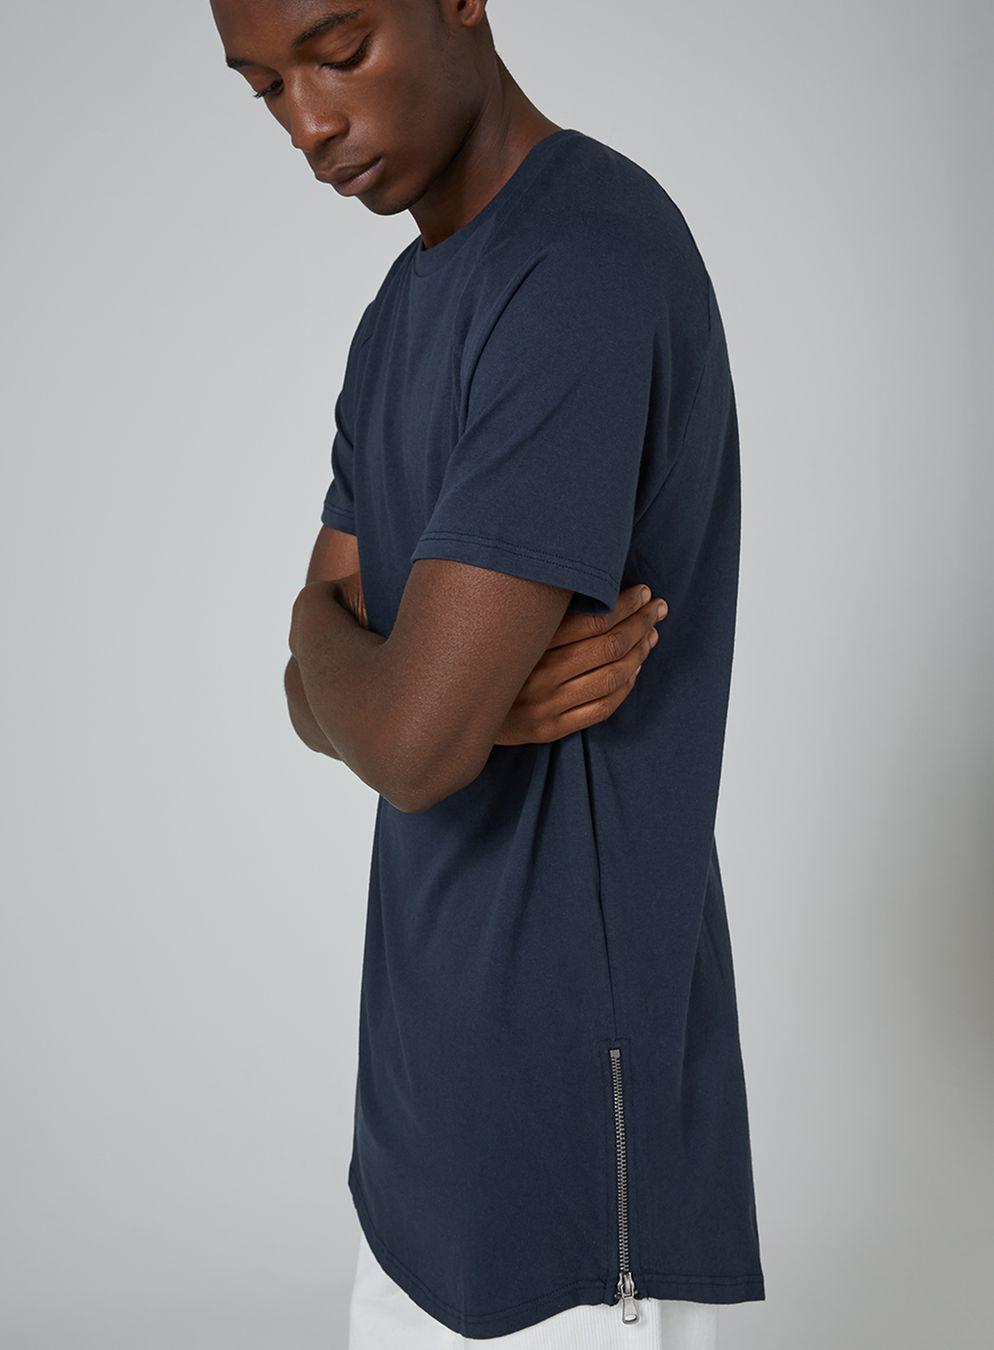 TOPMAN Cotton Navy Side Zip Longline T-shirt in Blue for Men - Lyst